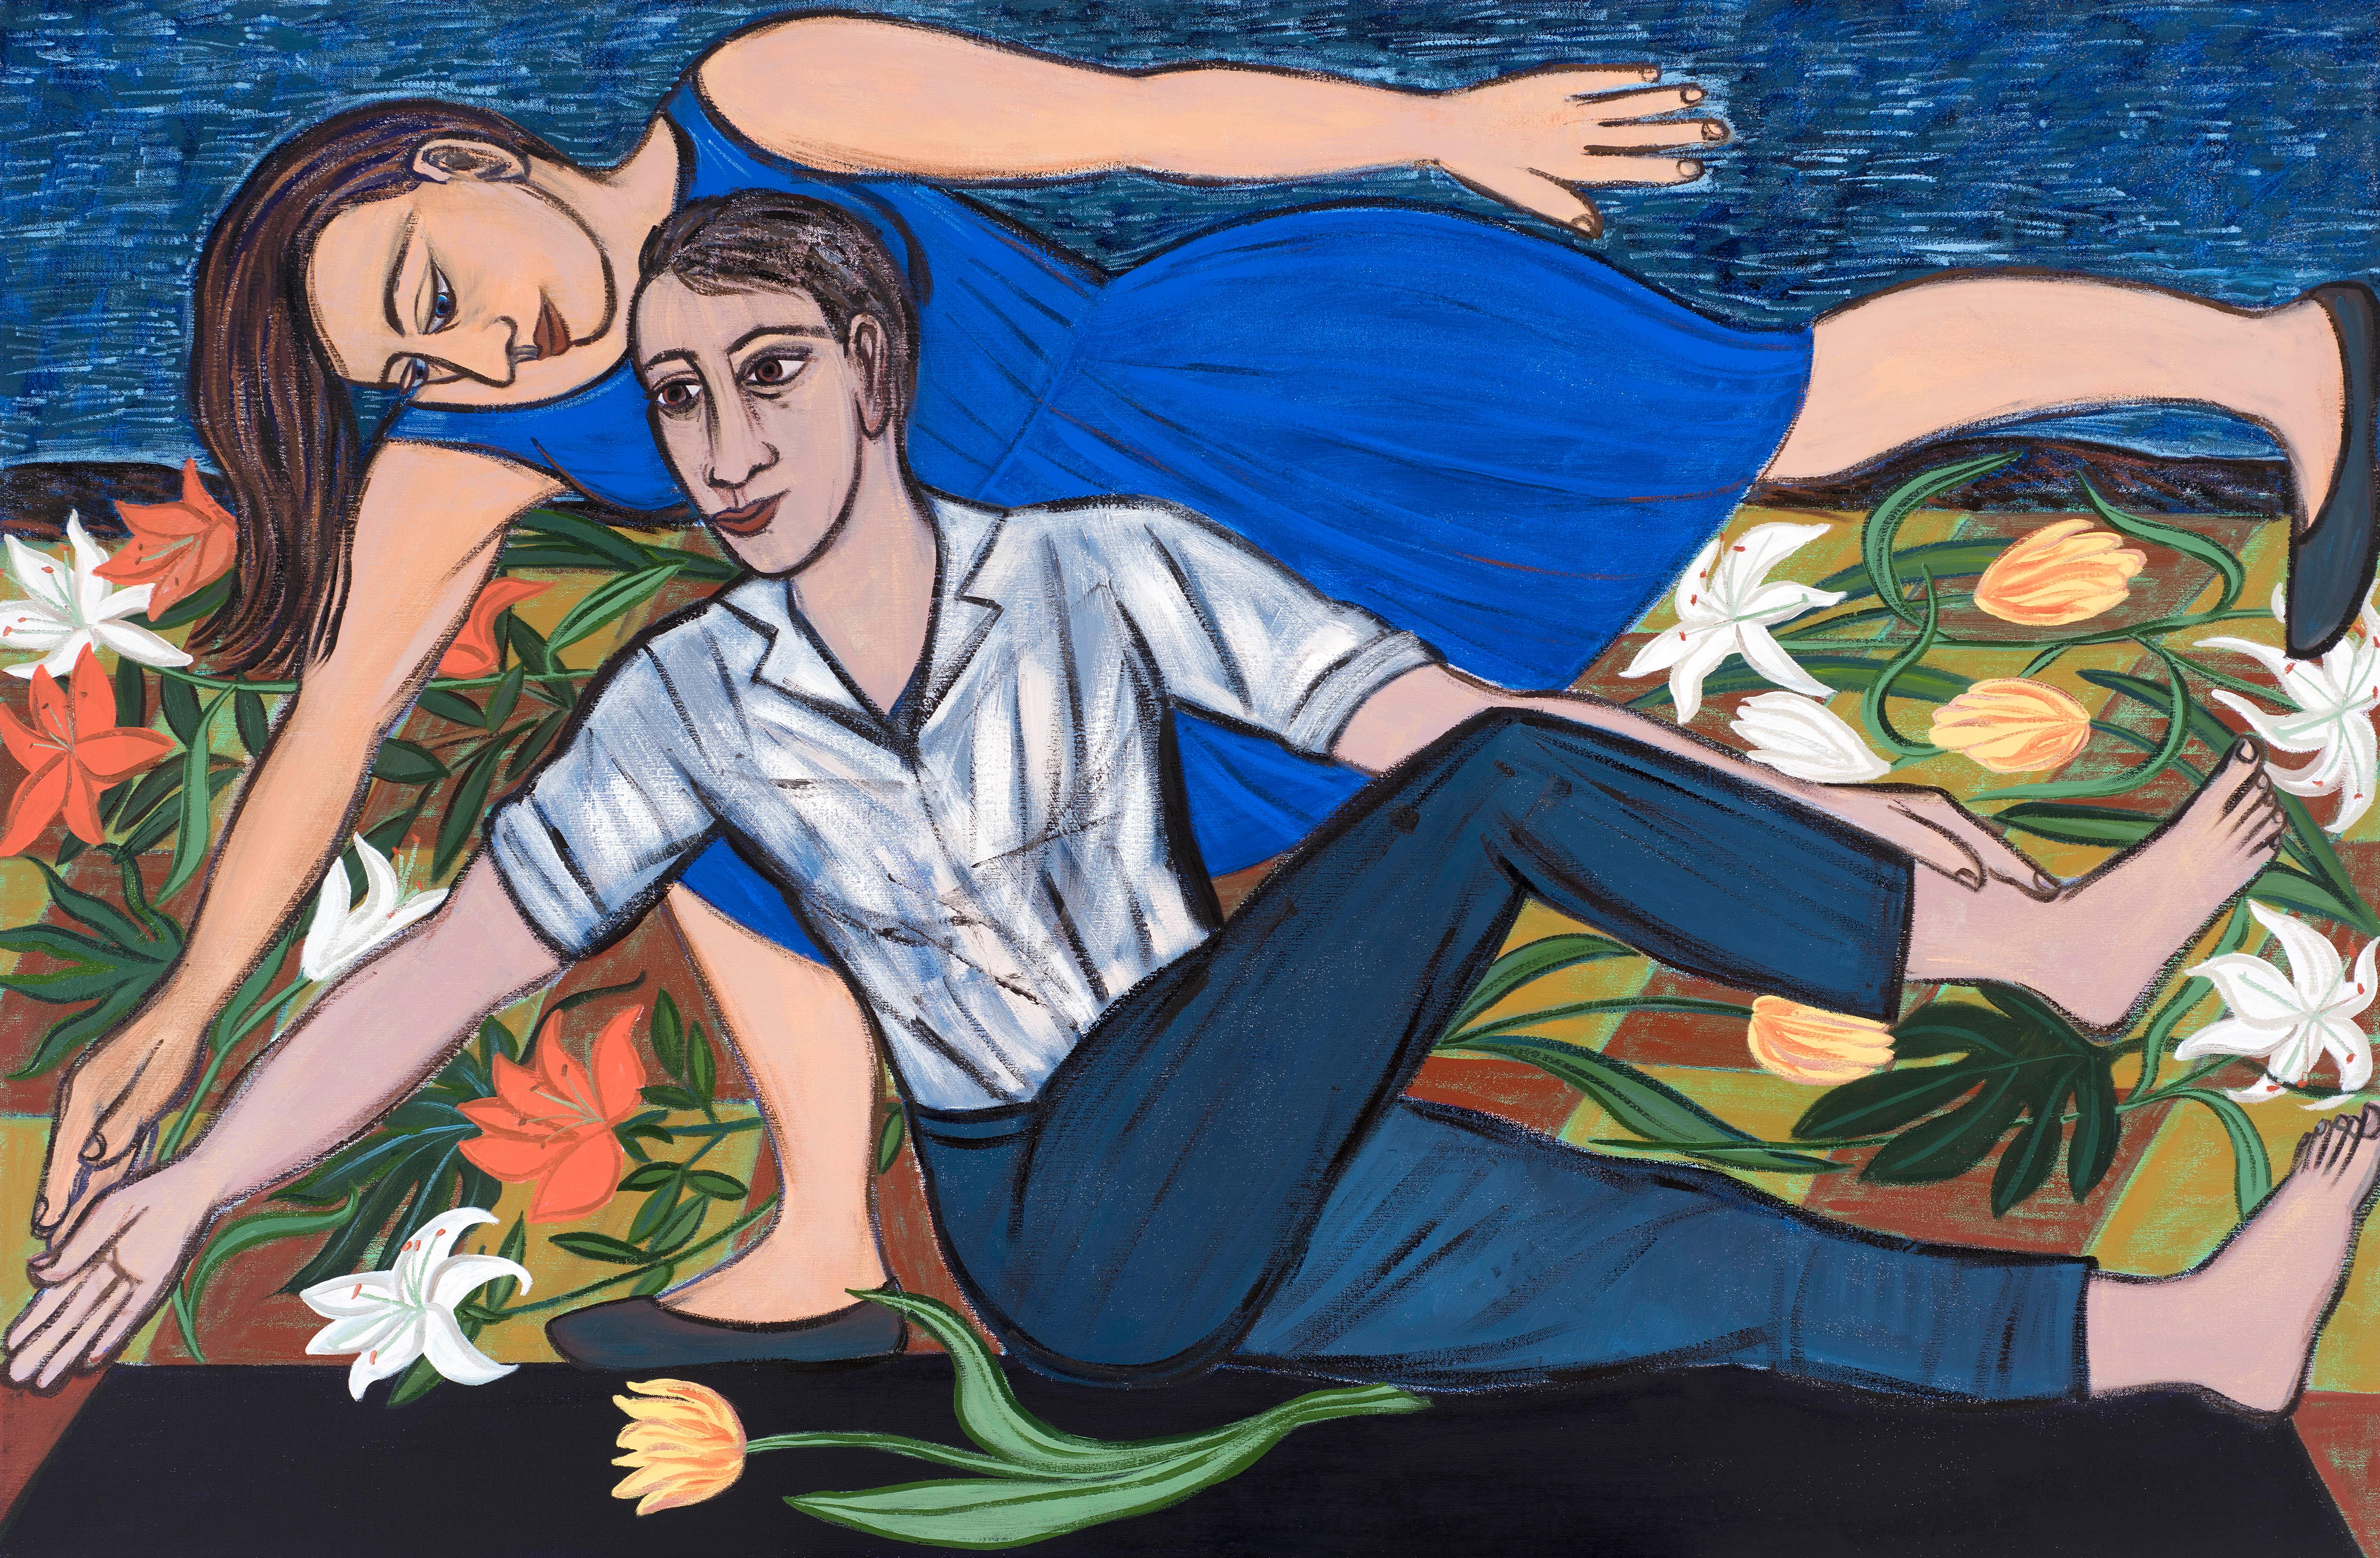 Duo bleu, 2016 - Eileen Cooper (peinture figurative)

Tout au long de sa carrière, Eileen Cooper (née en 1953) a réalisé des peintures figuratives qui abordent les thèmes de la fertilité, de la sexualité, de la maternité, de la vie et de la mort.